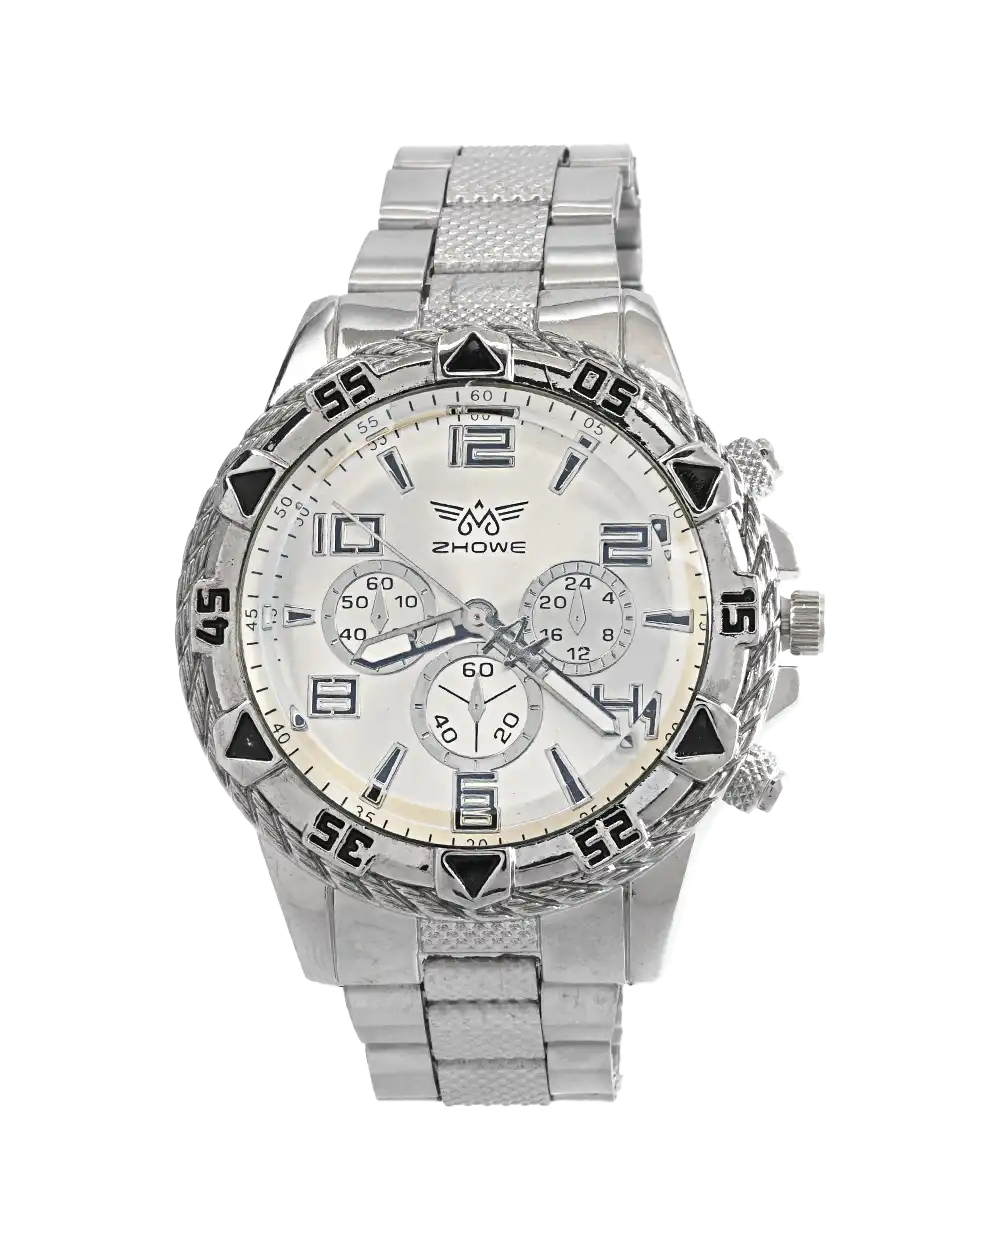 خرید ساعت مچی مردانه ZHOWE مدل 1784 نقره ای با بهترین قیمت استیل و ارزان مناسب برای آقایان به همراه ارسال رایگان و جعبه ی ساعت کادویی